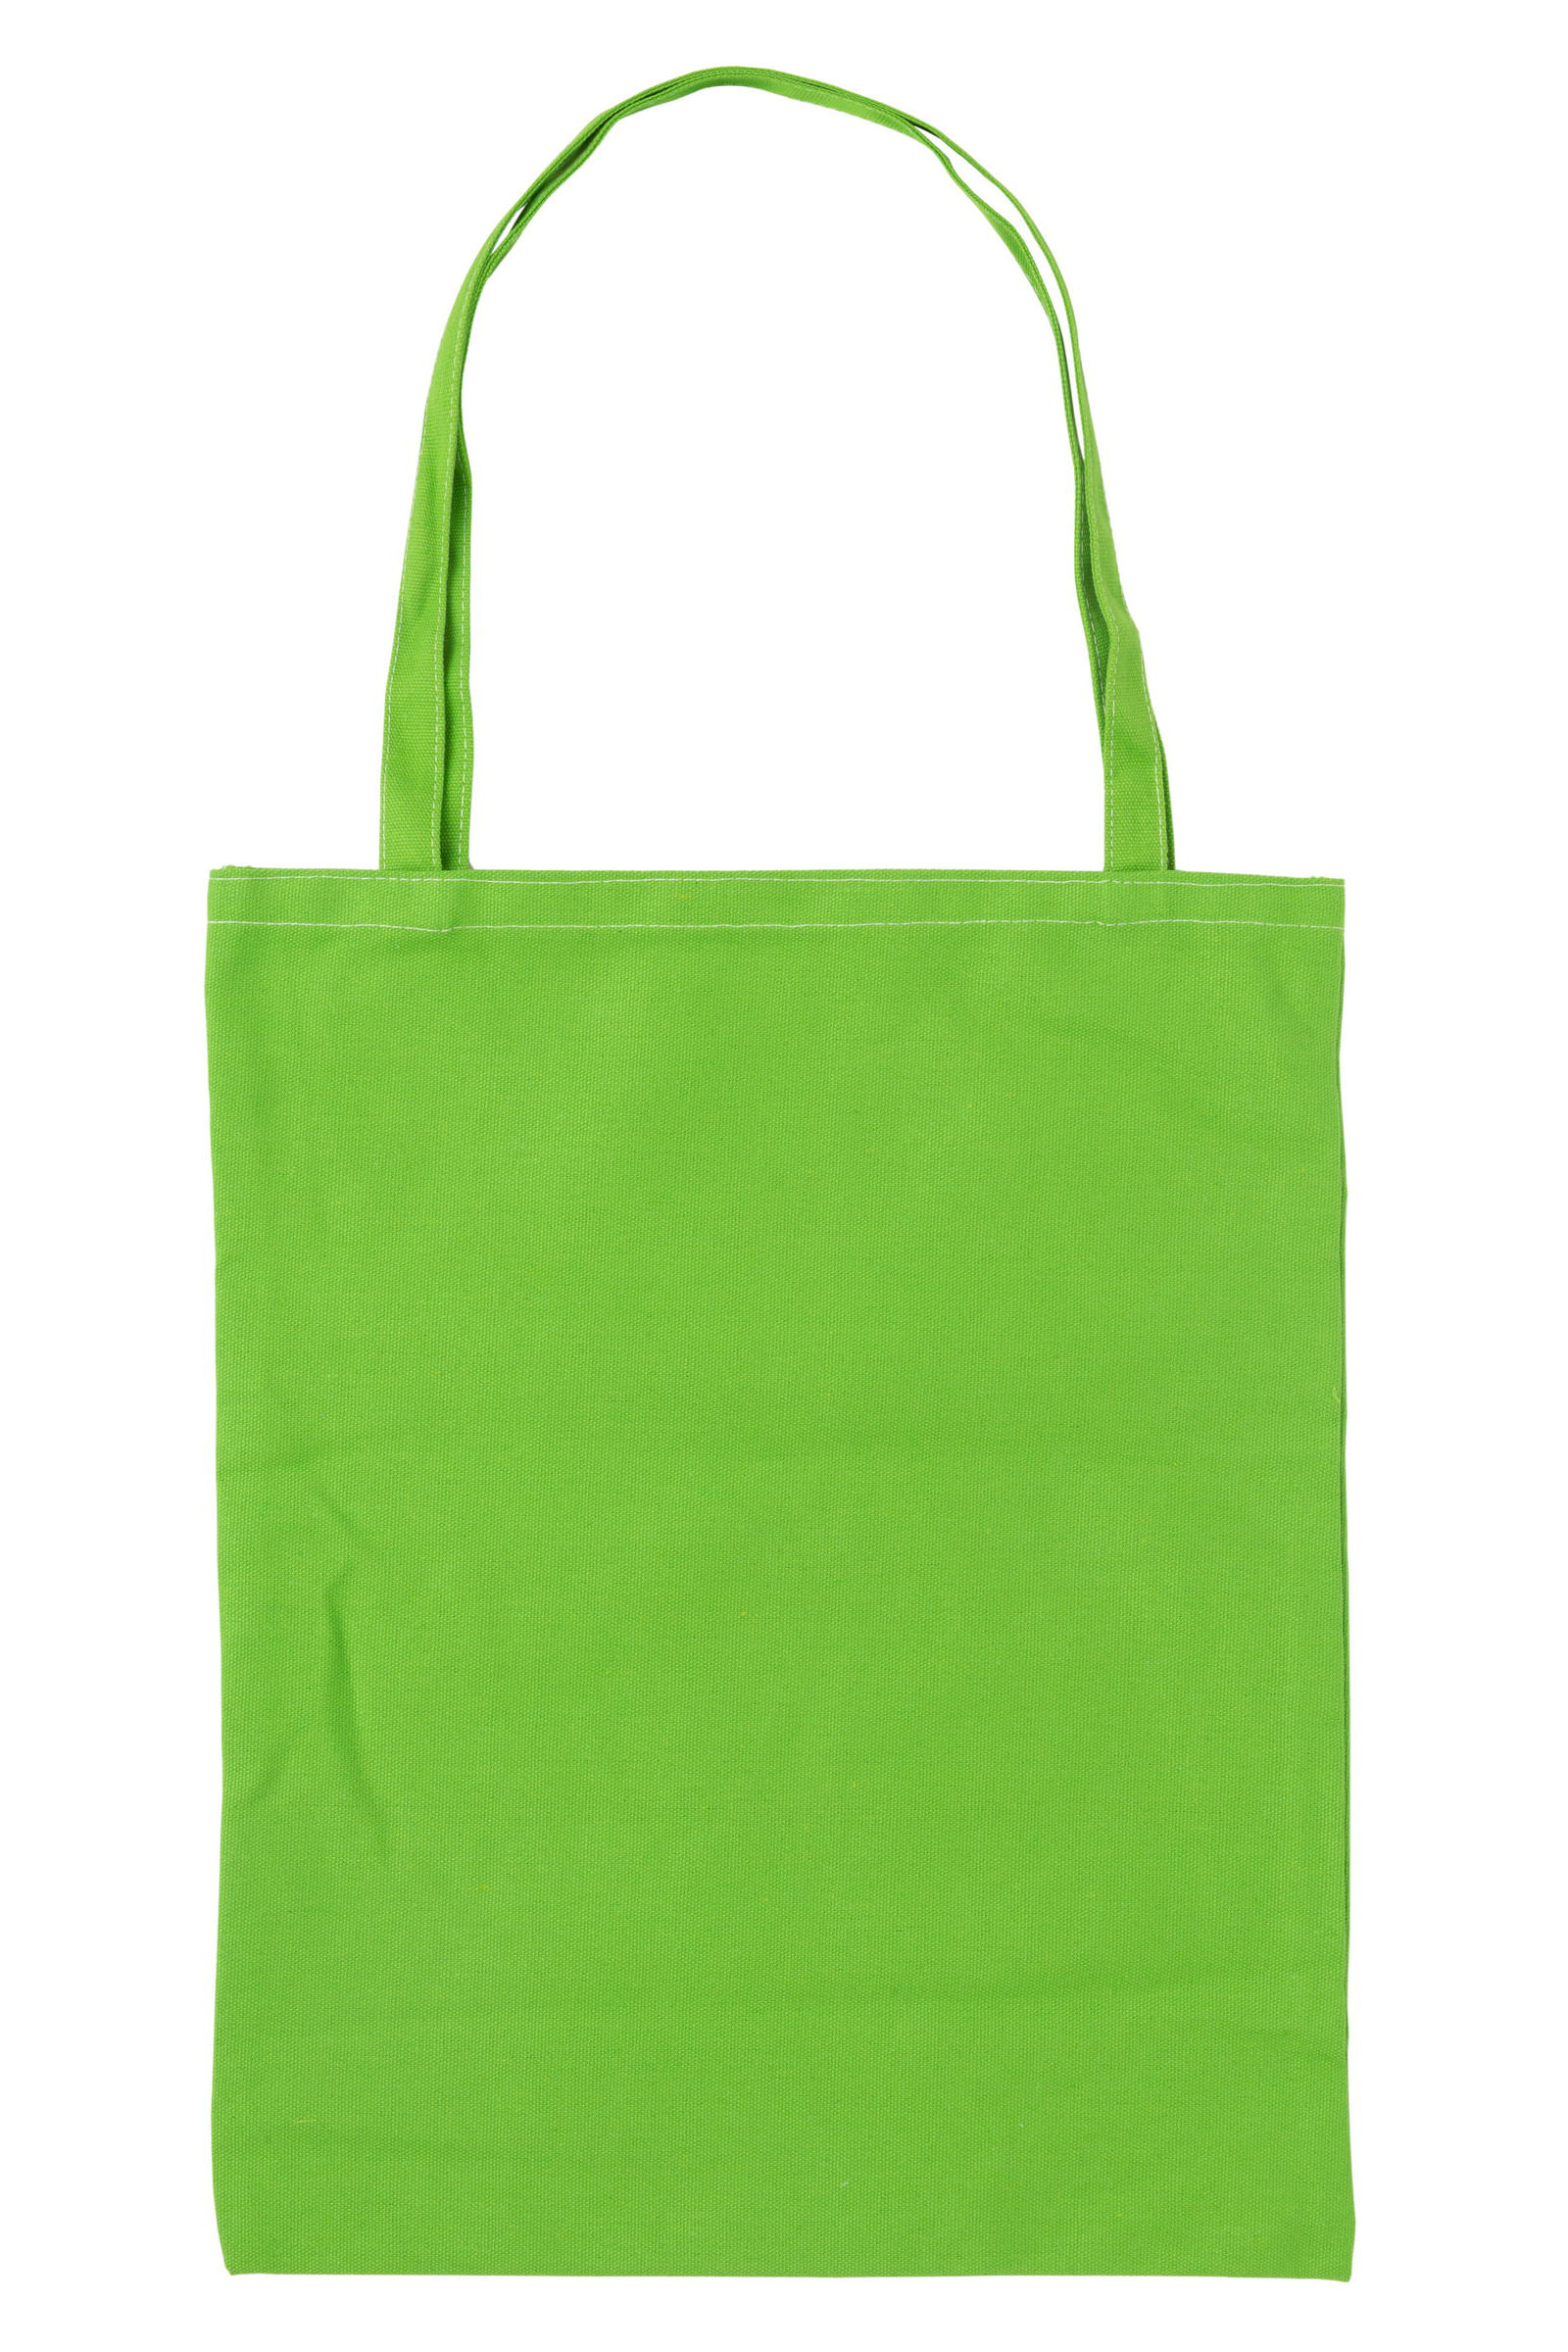 Eco Bag - Escrita Verde - Laticínios Aviação